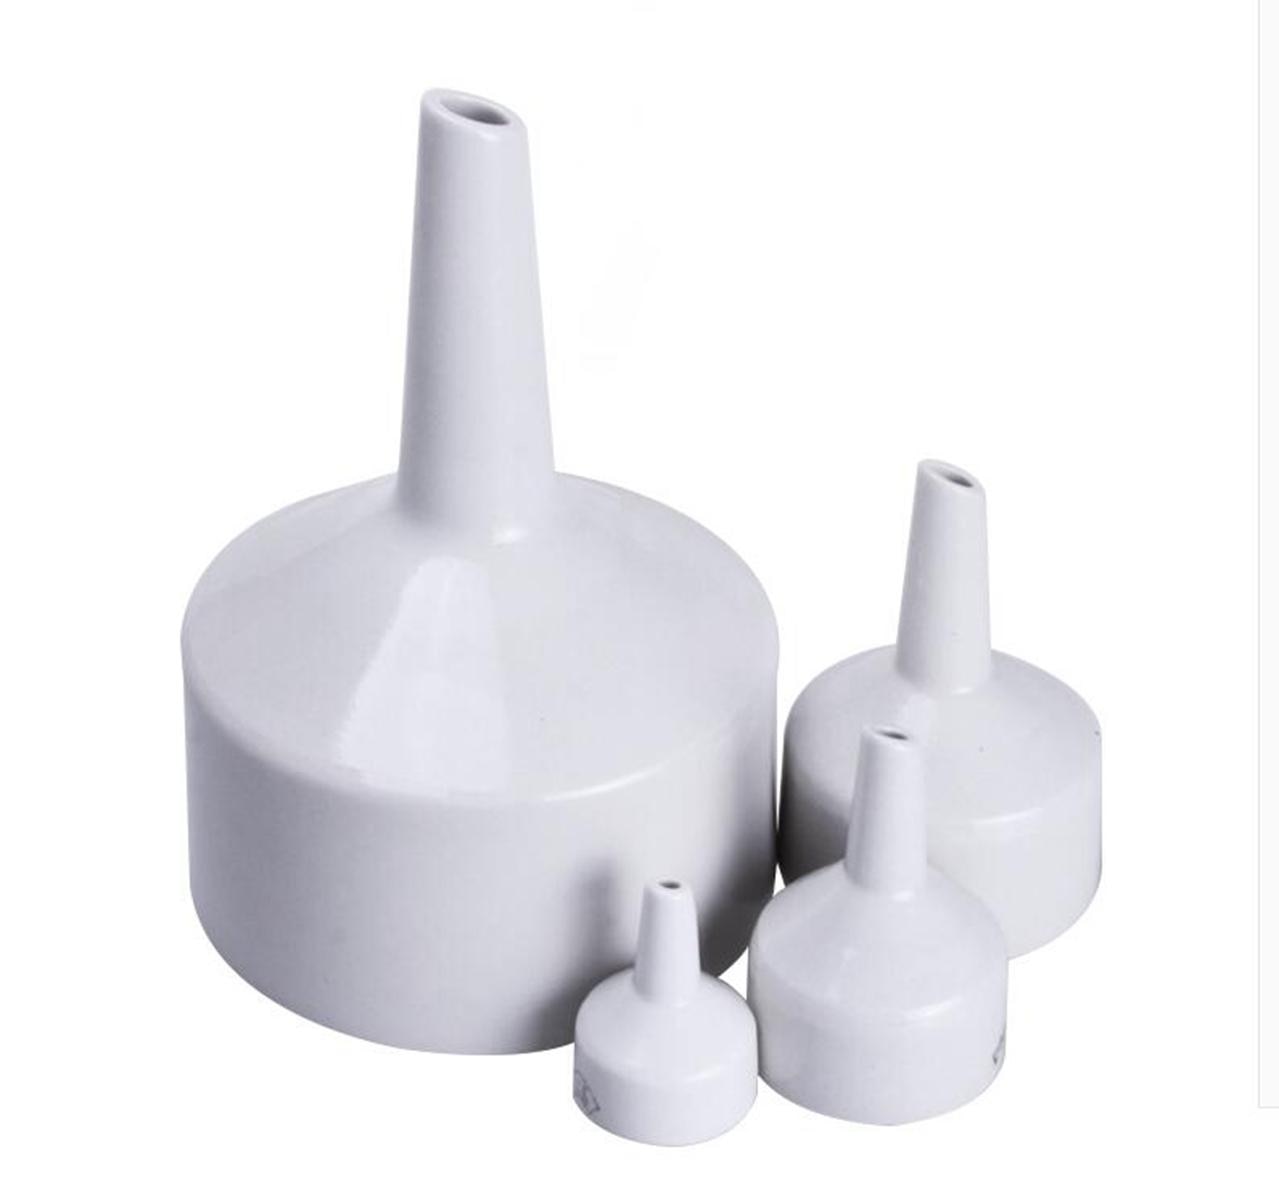 O D 40mm Porcelain Buchner Funnel Lab Glassware Chemistry Laboratory Sphere Funnel Filtration Filter Kit Tools